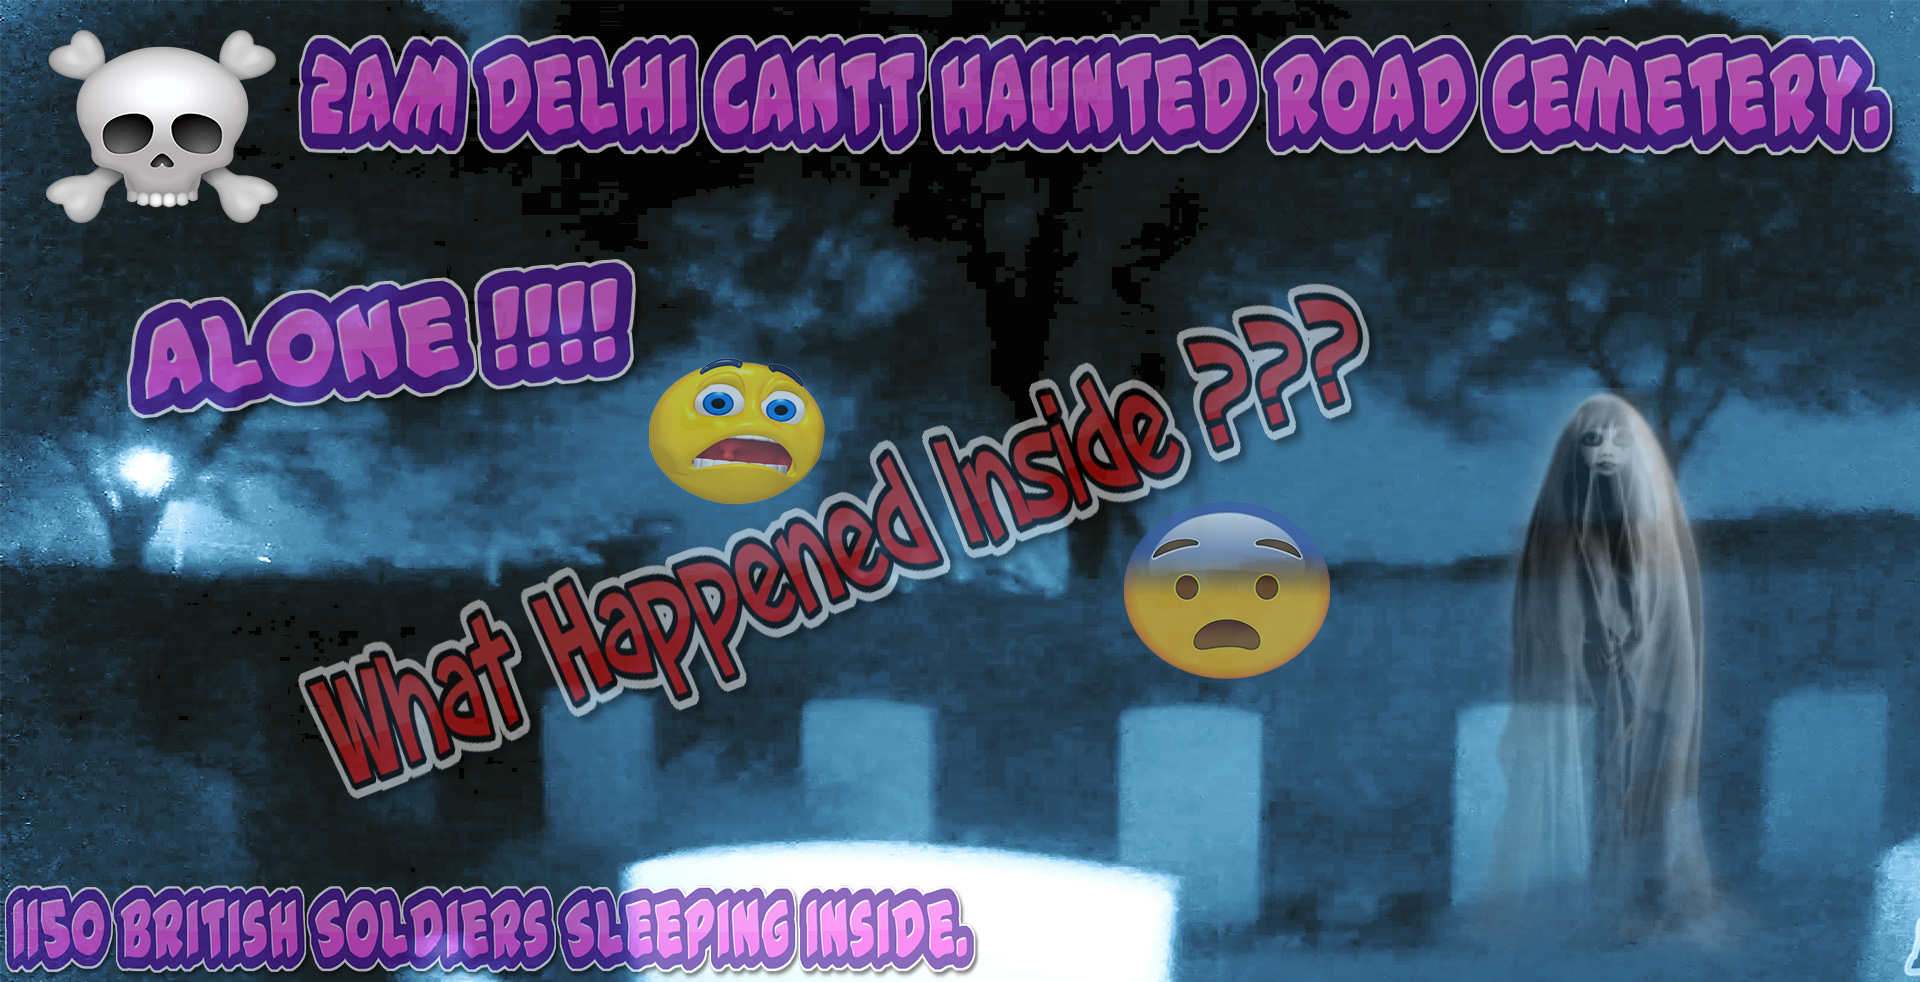 Delhi Cantt Haunted